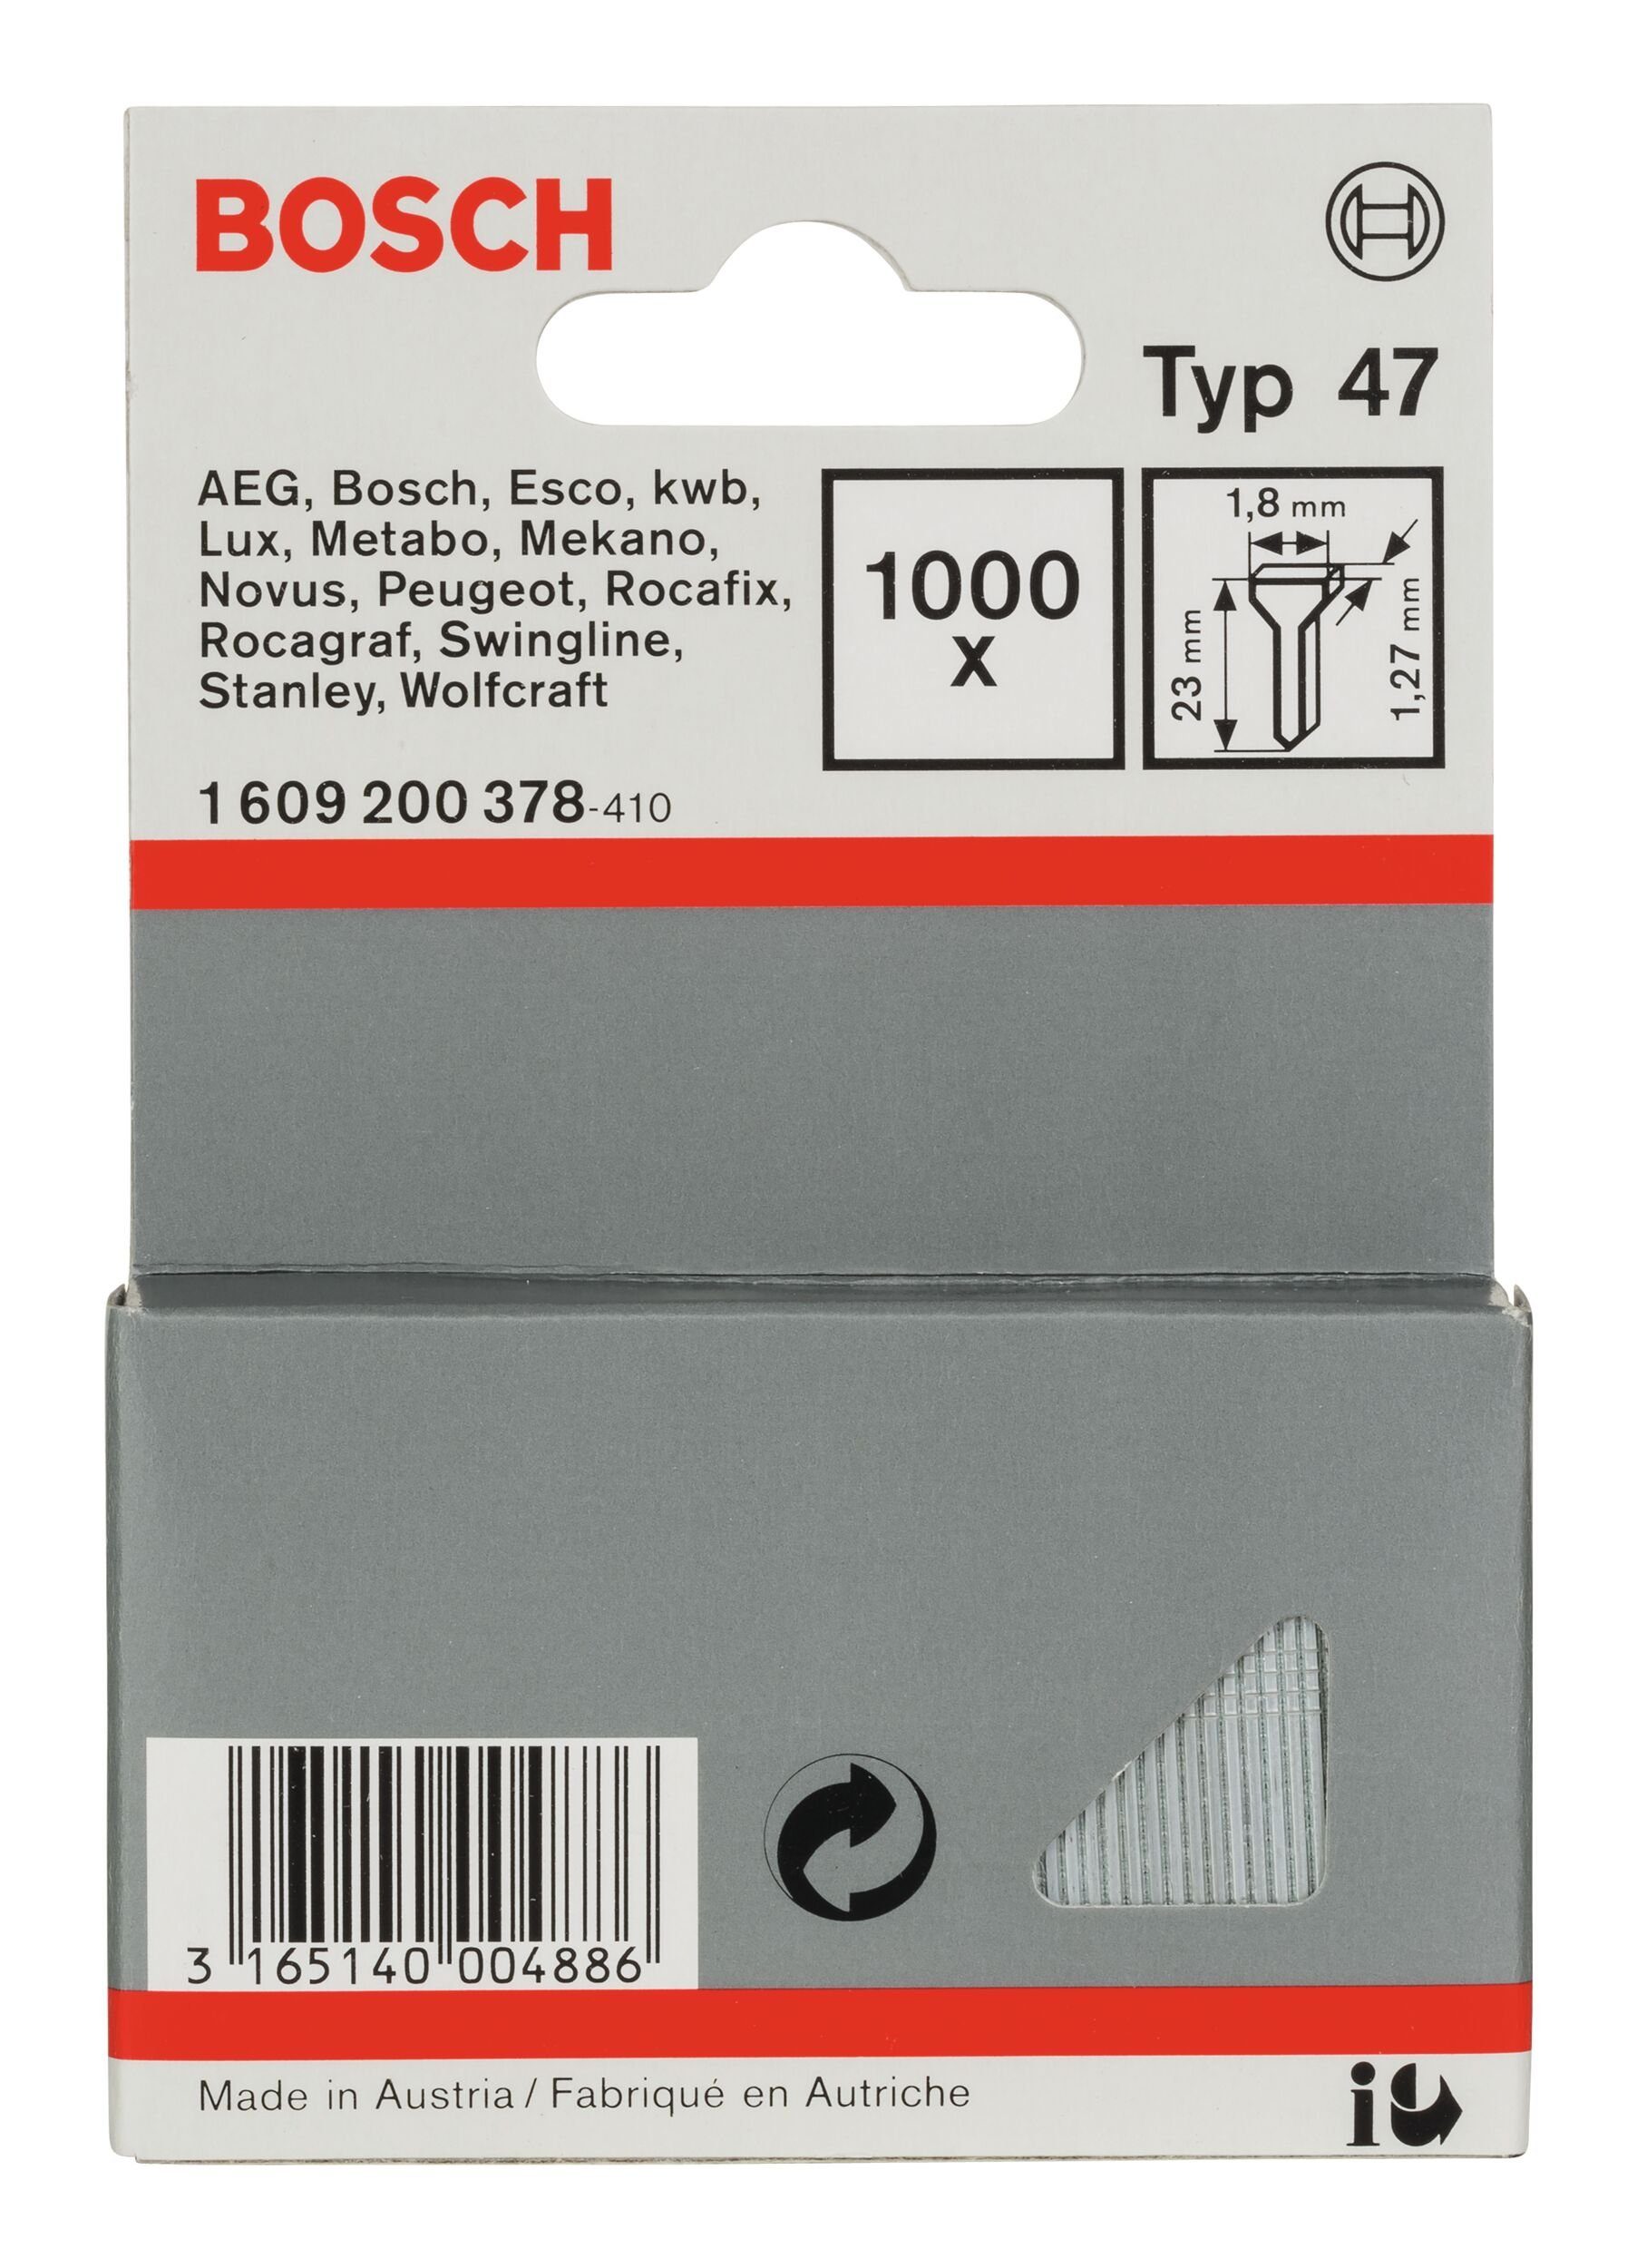 Bosch Accessories BOSCH Tackerklammer, Typ 47 Tackernagel - 1,27 x 23 x 1,8 mm - 1000er-Pack